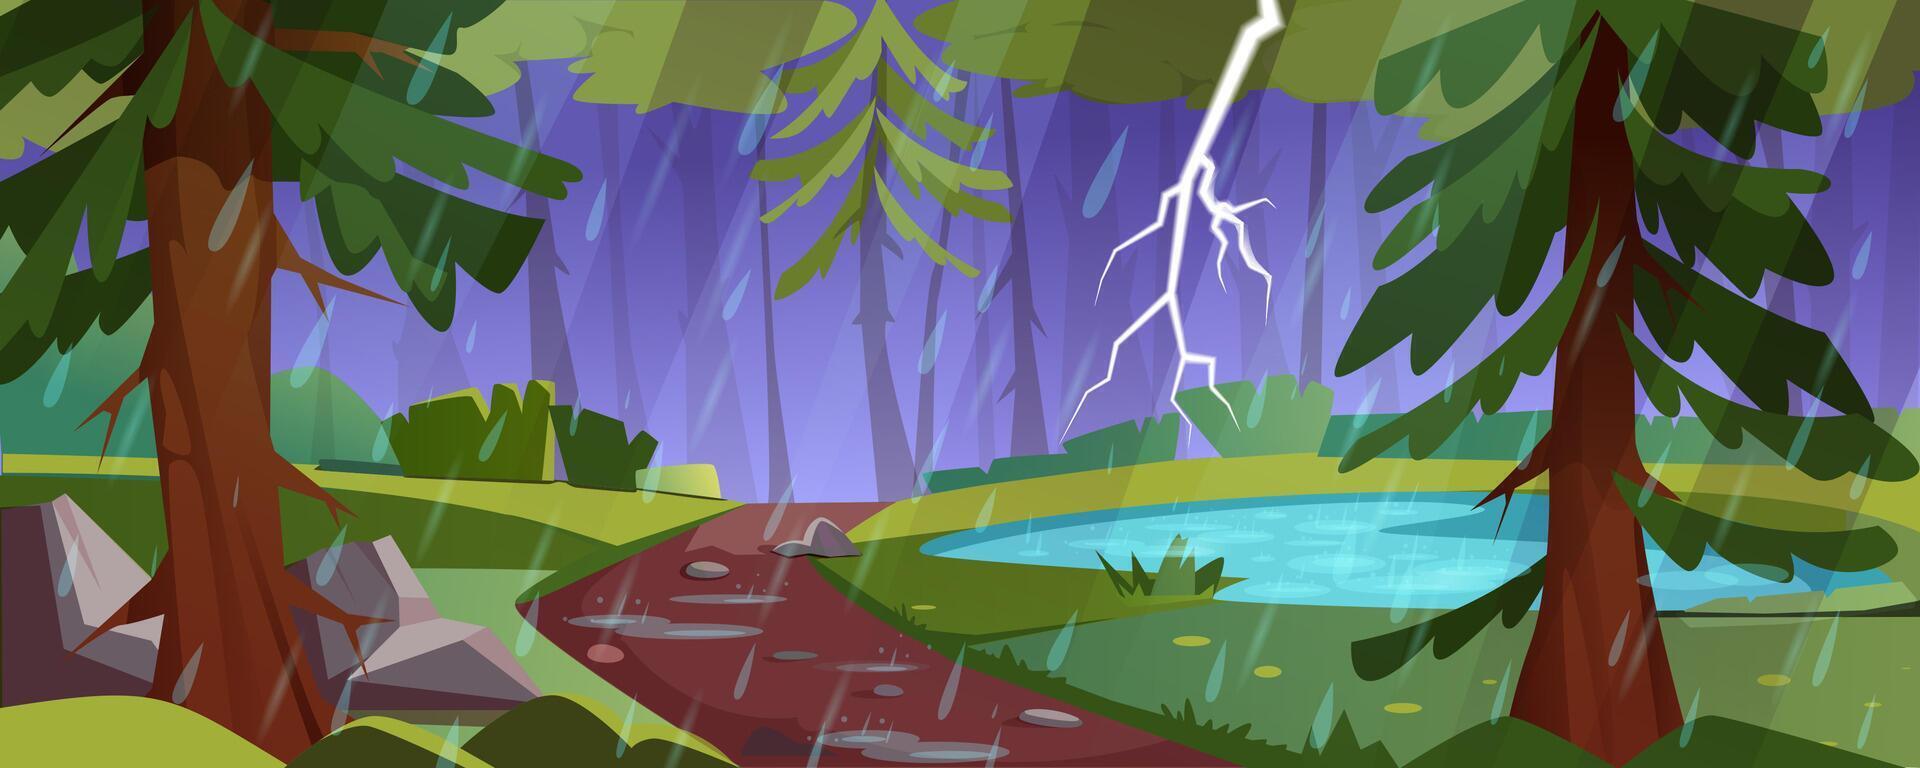 skog landskap med damm, grön träd och buskar i regn. natur scen med sjö, gångstig med stenar och blixt- i mörk himmel. tecknad serie illustration av naturlig parkera med åskväder vektor